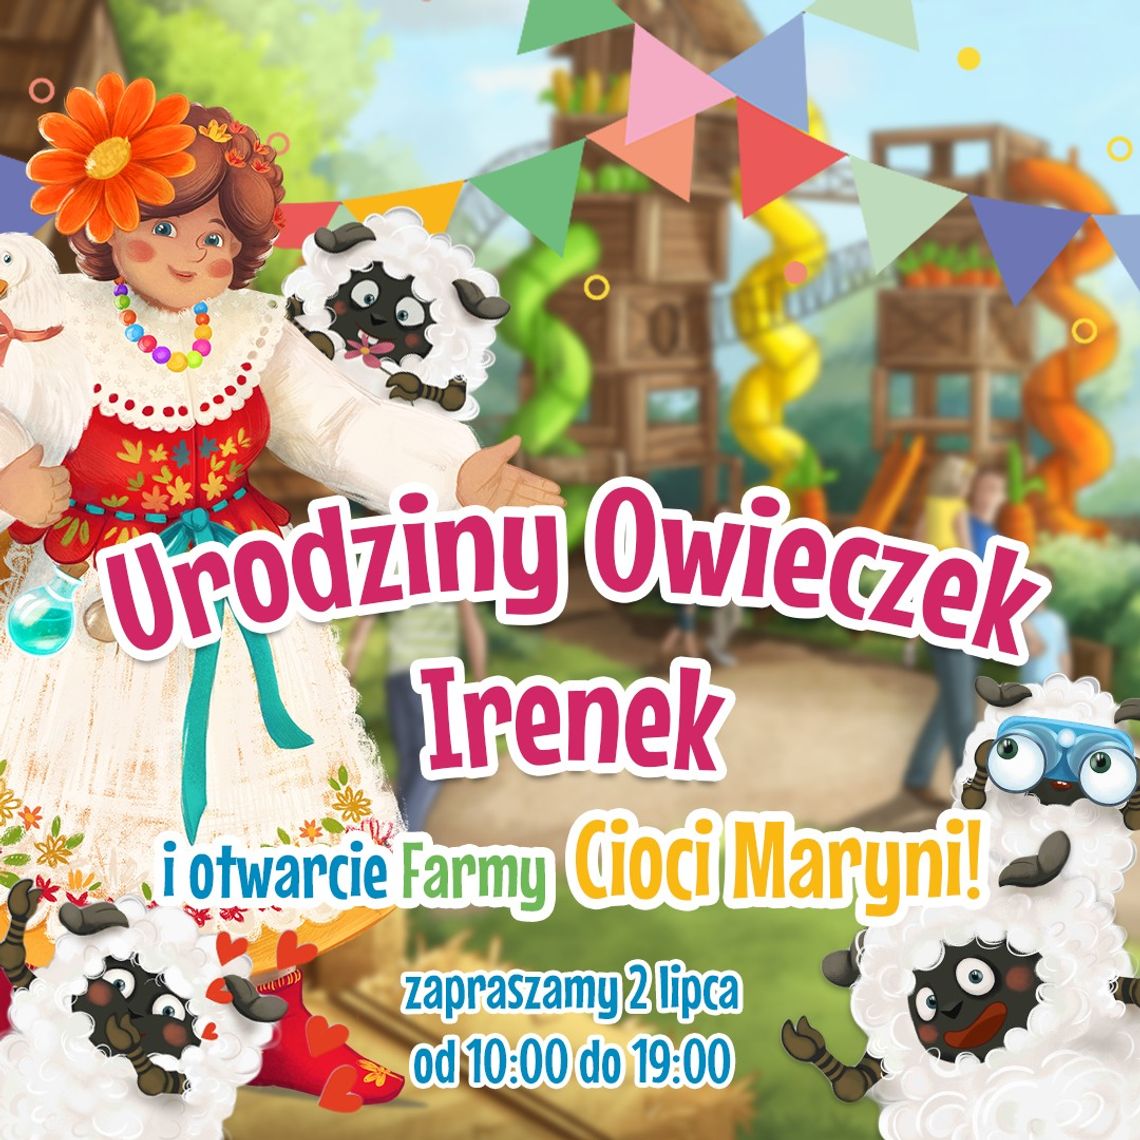 Urodziny Owieczek Irenek i otwarcie Farmy Cioci Maryni! | zapowiedzi imprez – halogorlice.info